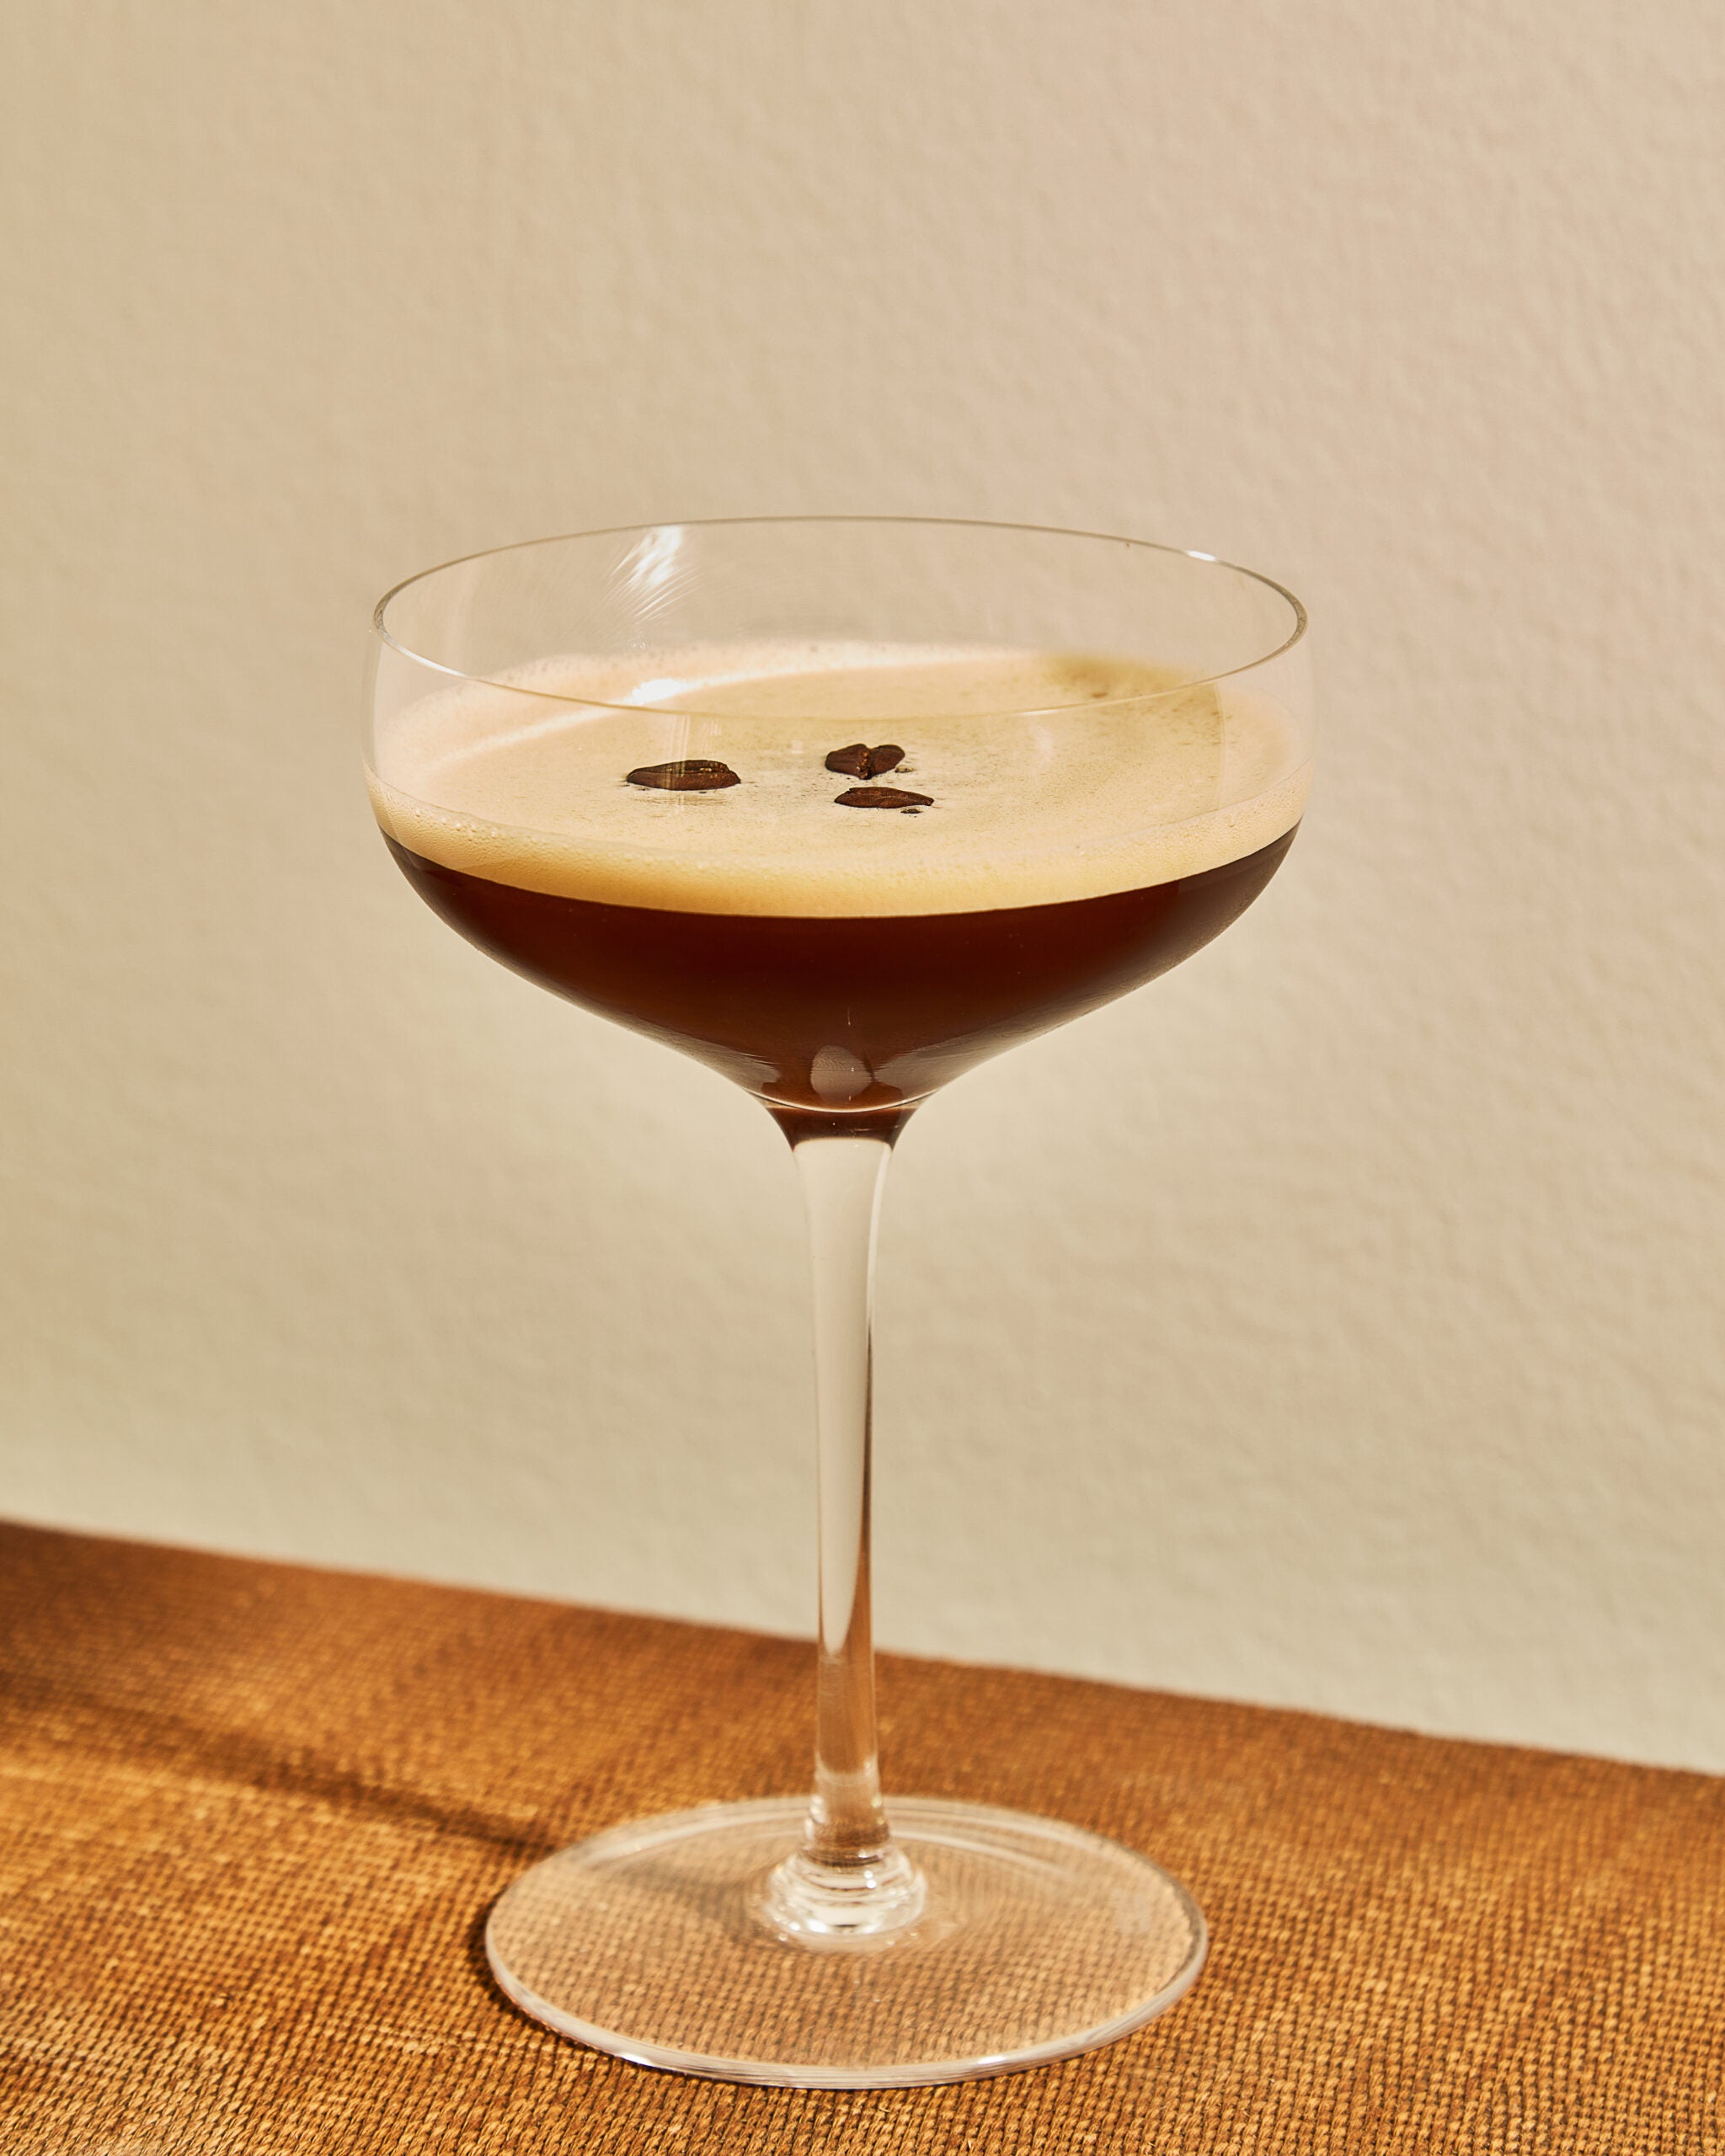 Easy Chilled Espresso Martini Recipe